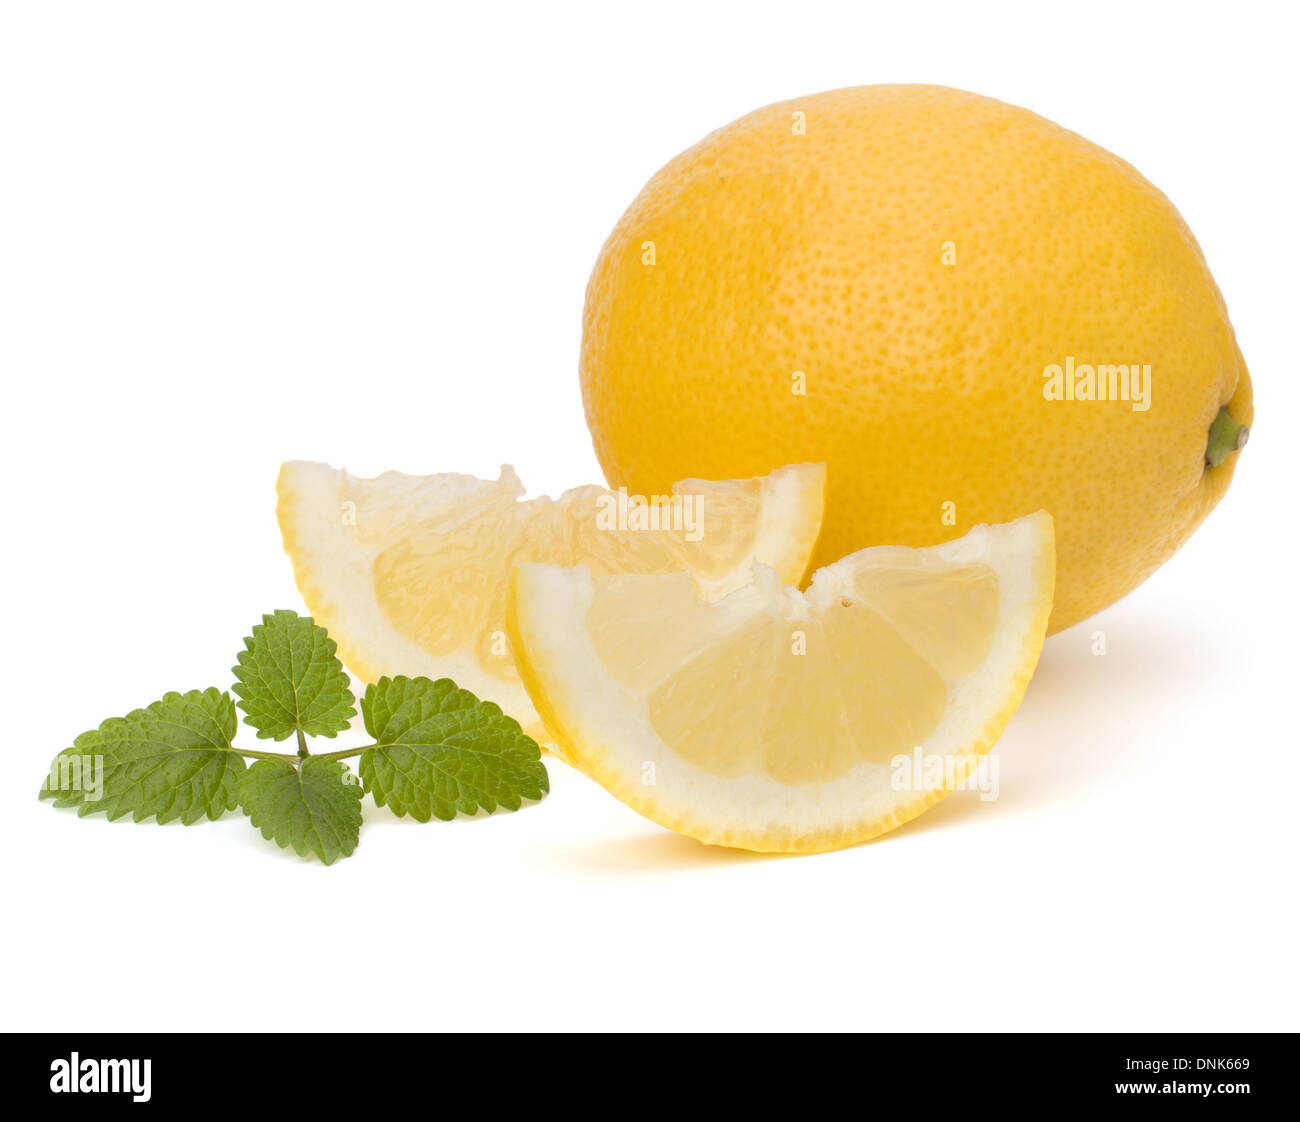 Lemon and citron mint leaf isolated on white background Stock Photo